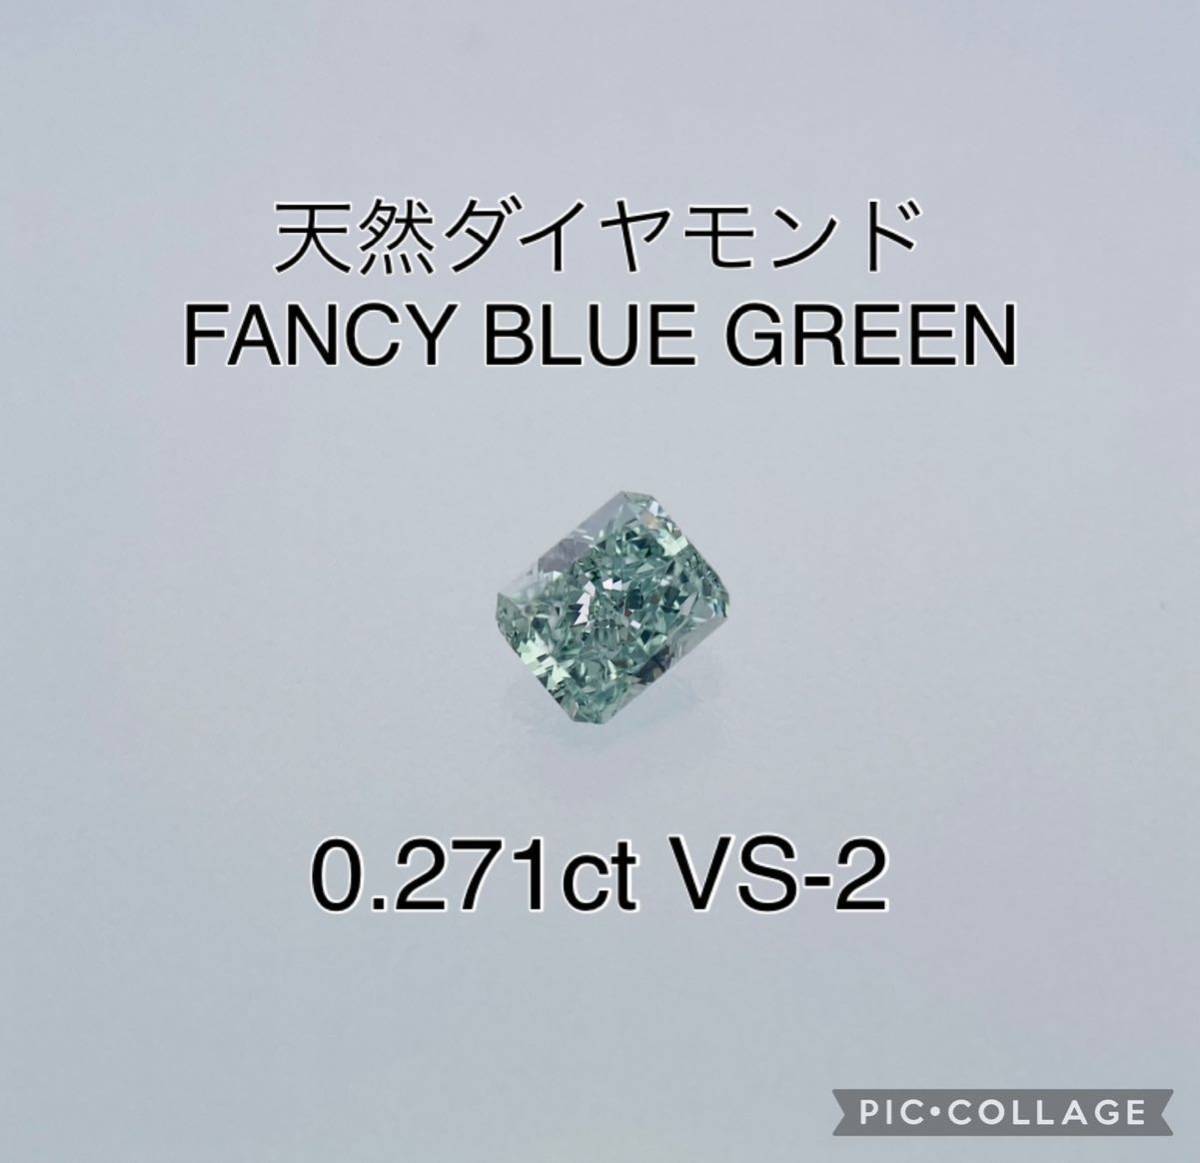 正規激安 Green Bule Fancy ダイヤ ファンシーカラー ルース 天然ダイヤモンド VS2 Natural 大粒 グリーンダイヤ ブルーダイヤ GIA CGL 0.271ct ダイヤモンド